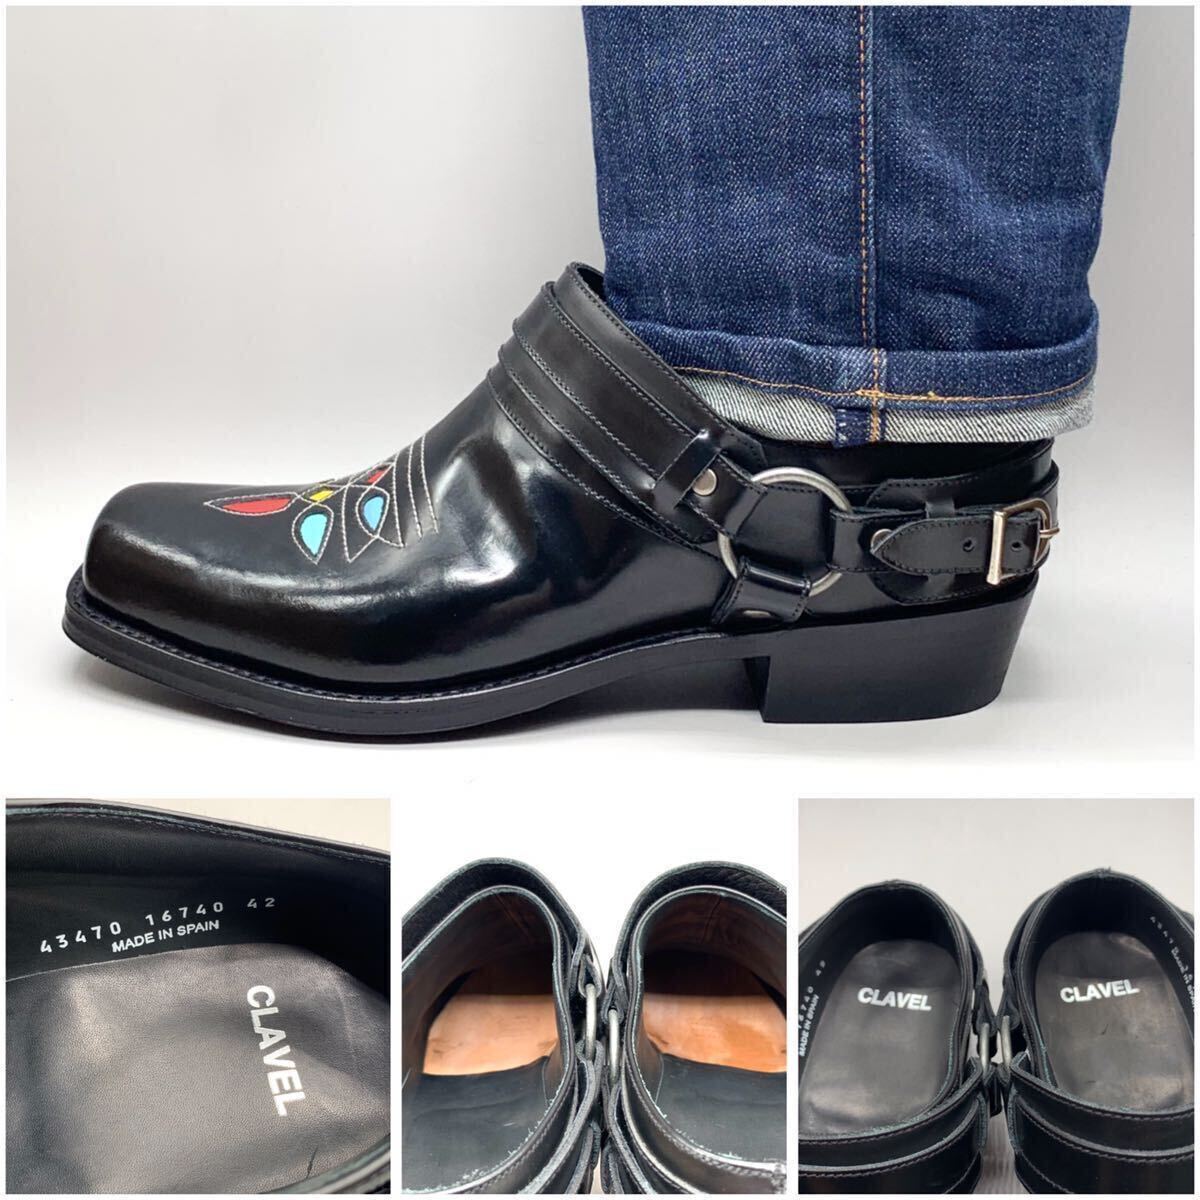 CLAVEL [クラベル] リングベルト ウエスタンシューズ 民族調 スクエアトゥ レザー ブラック 黒 42 27cm 革靴 スペイン製 メンズ 